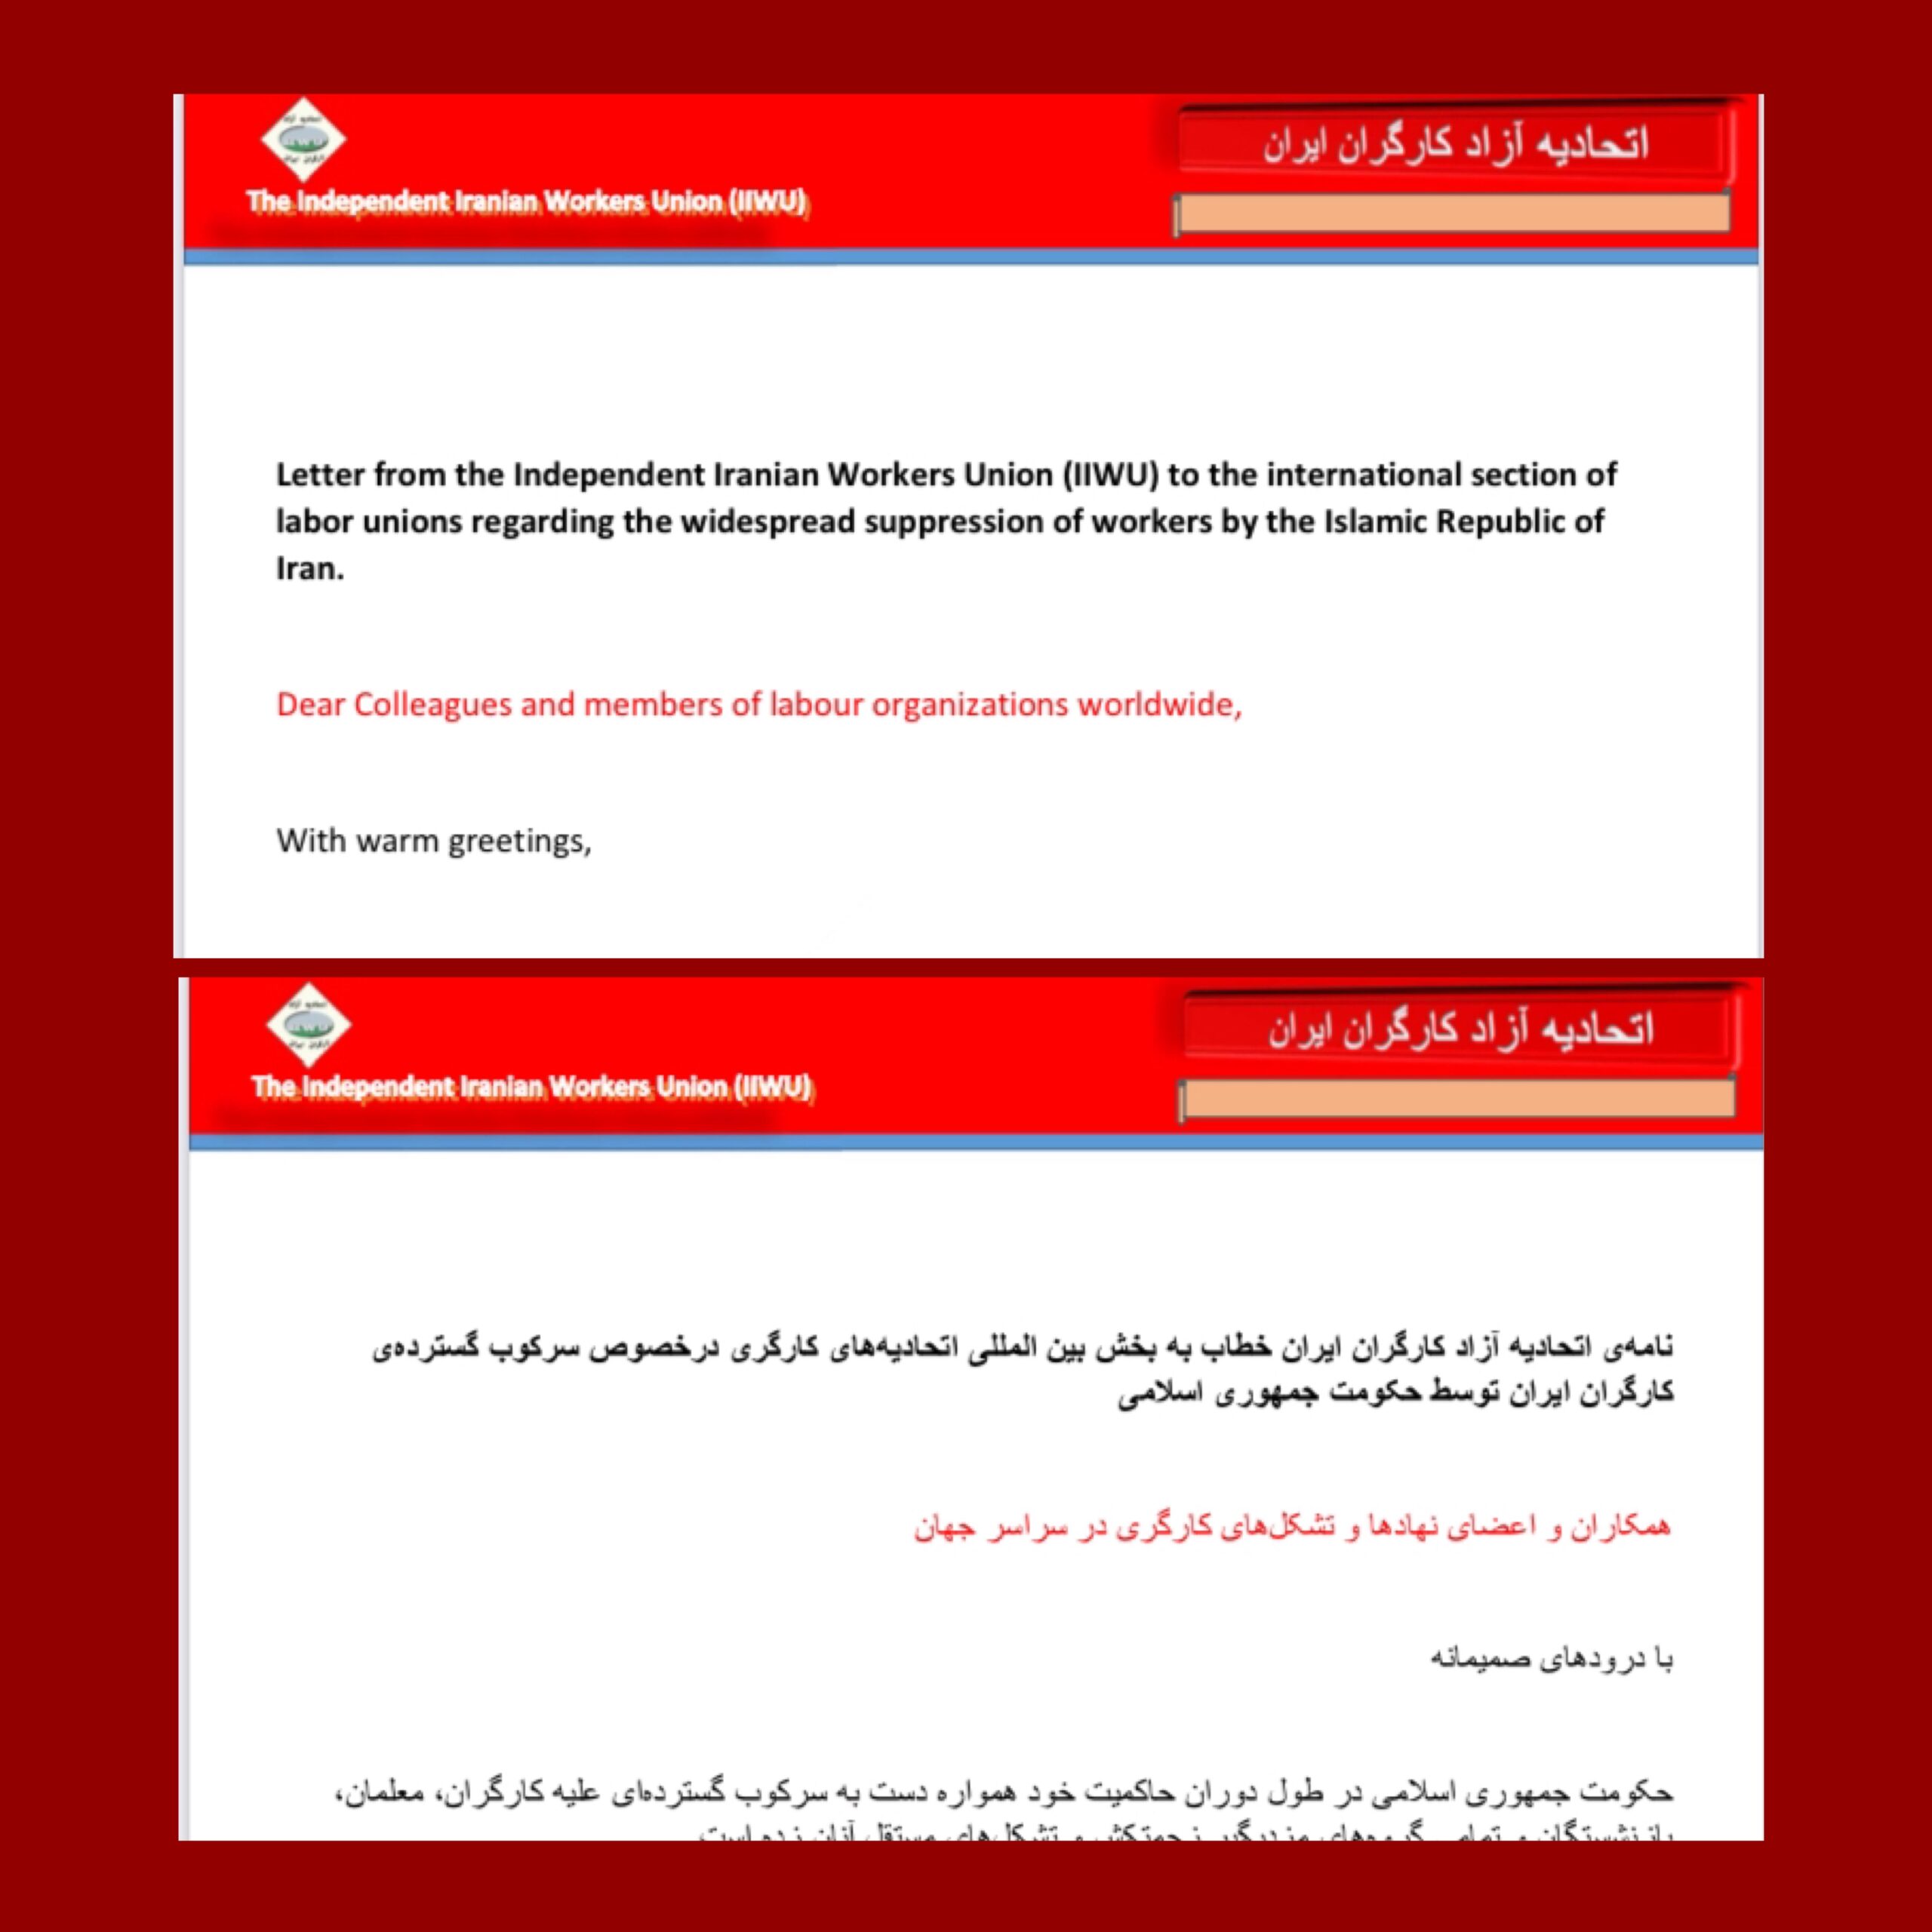 گزارشی پیرامون نامه‌ی اتحادیه آزاد کارگران ایران به بخش بین المللی اتحادیه‌های کارگری درخصوص سرکوب گسترده‌ی کارگران ایران توسط حکومت جمهوری اسلامی